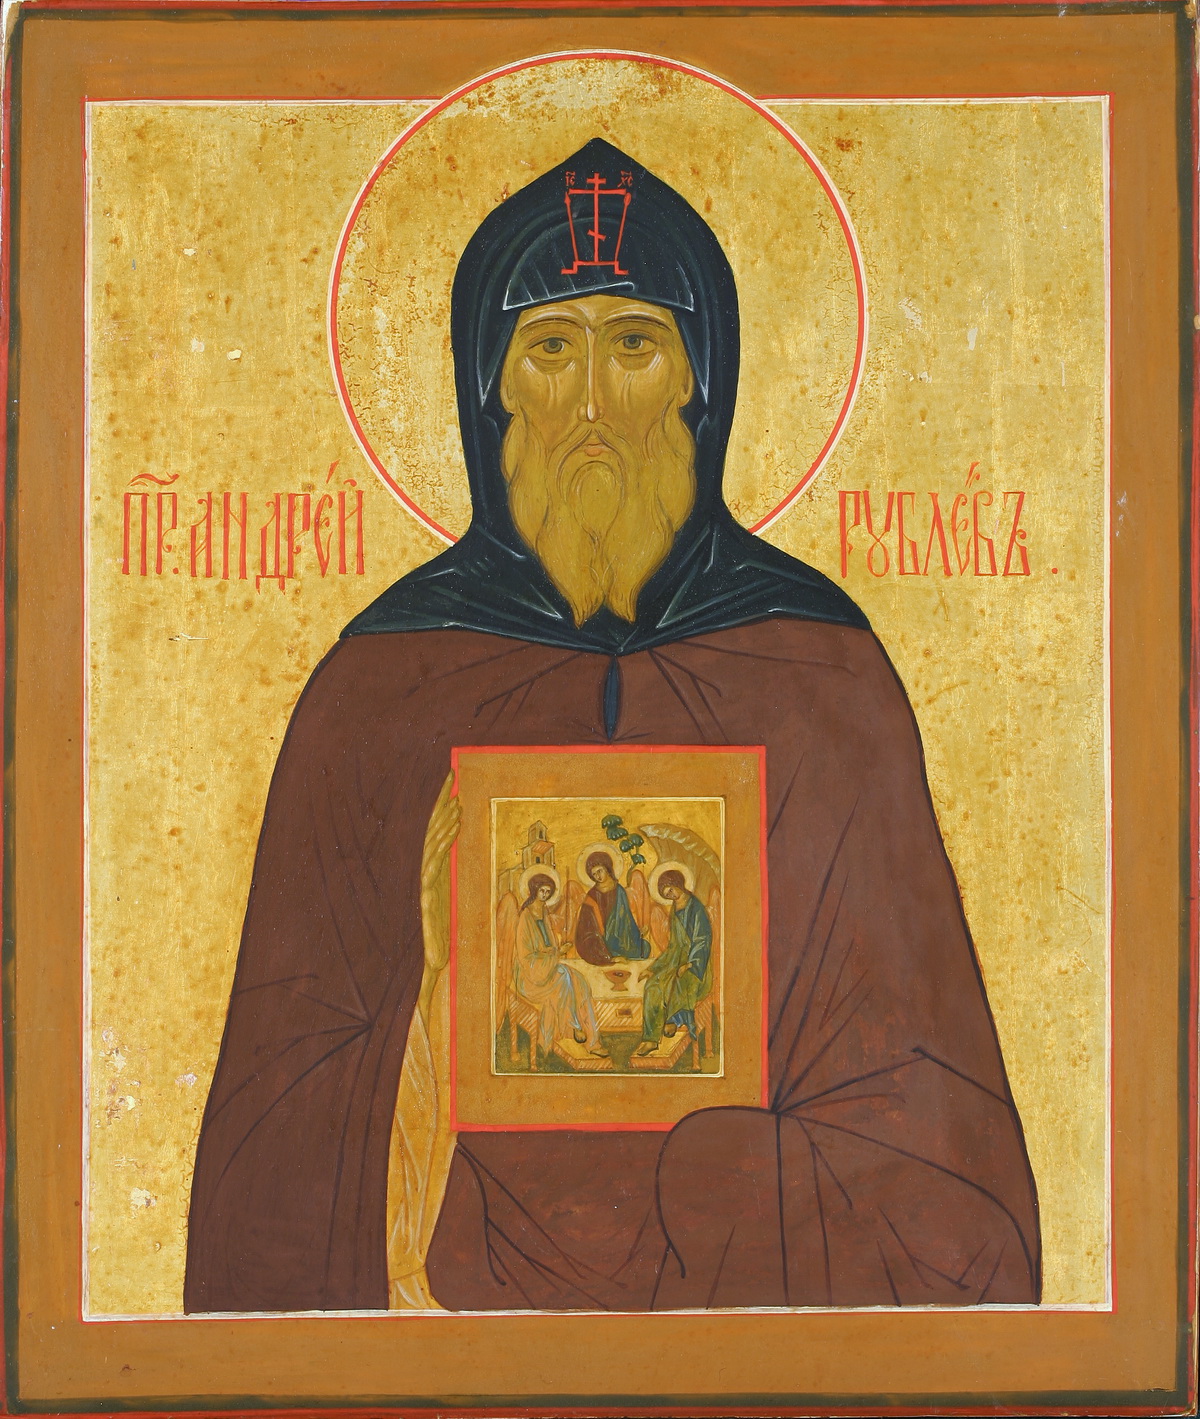 Преподобный Андрей Радонежский, иконописец.  Икона из ризницы Троице-Сергиевой Лавры